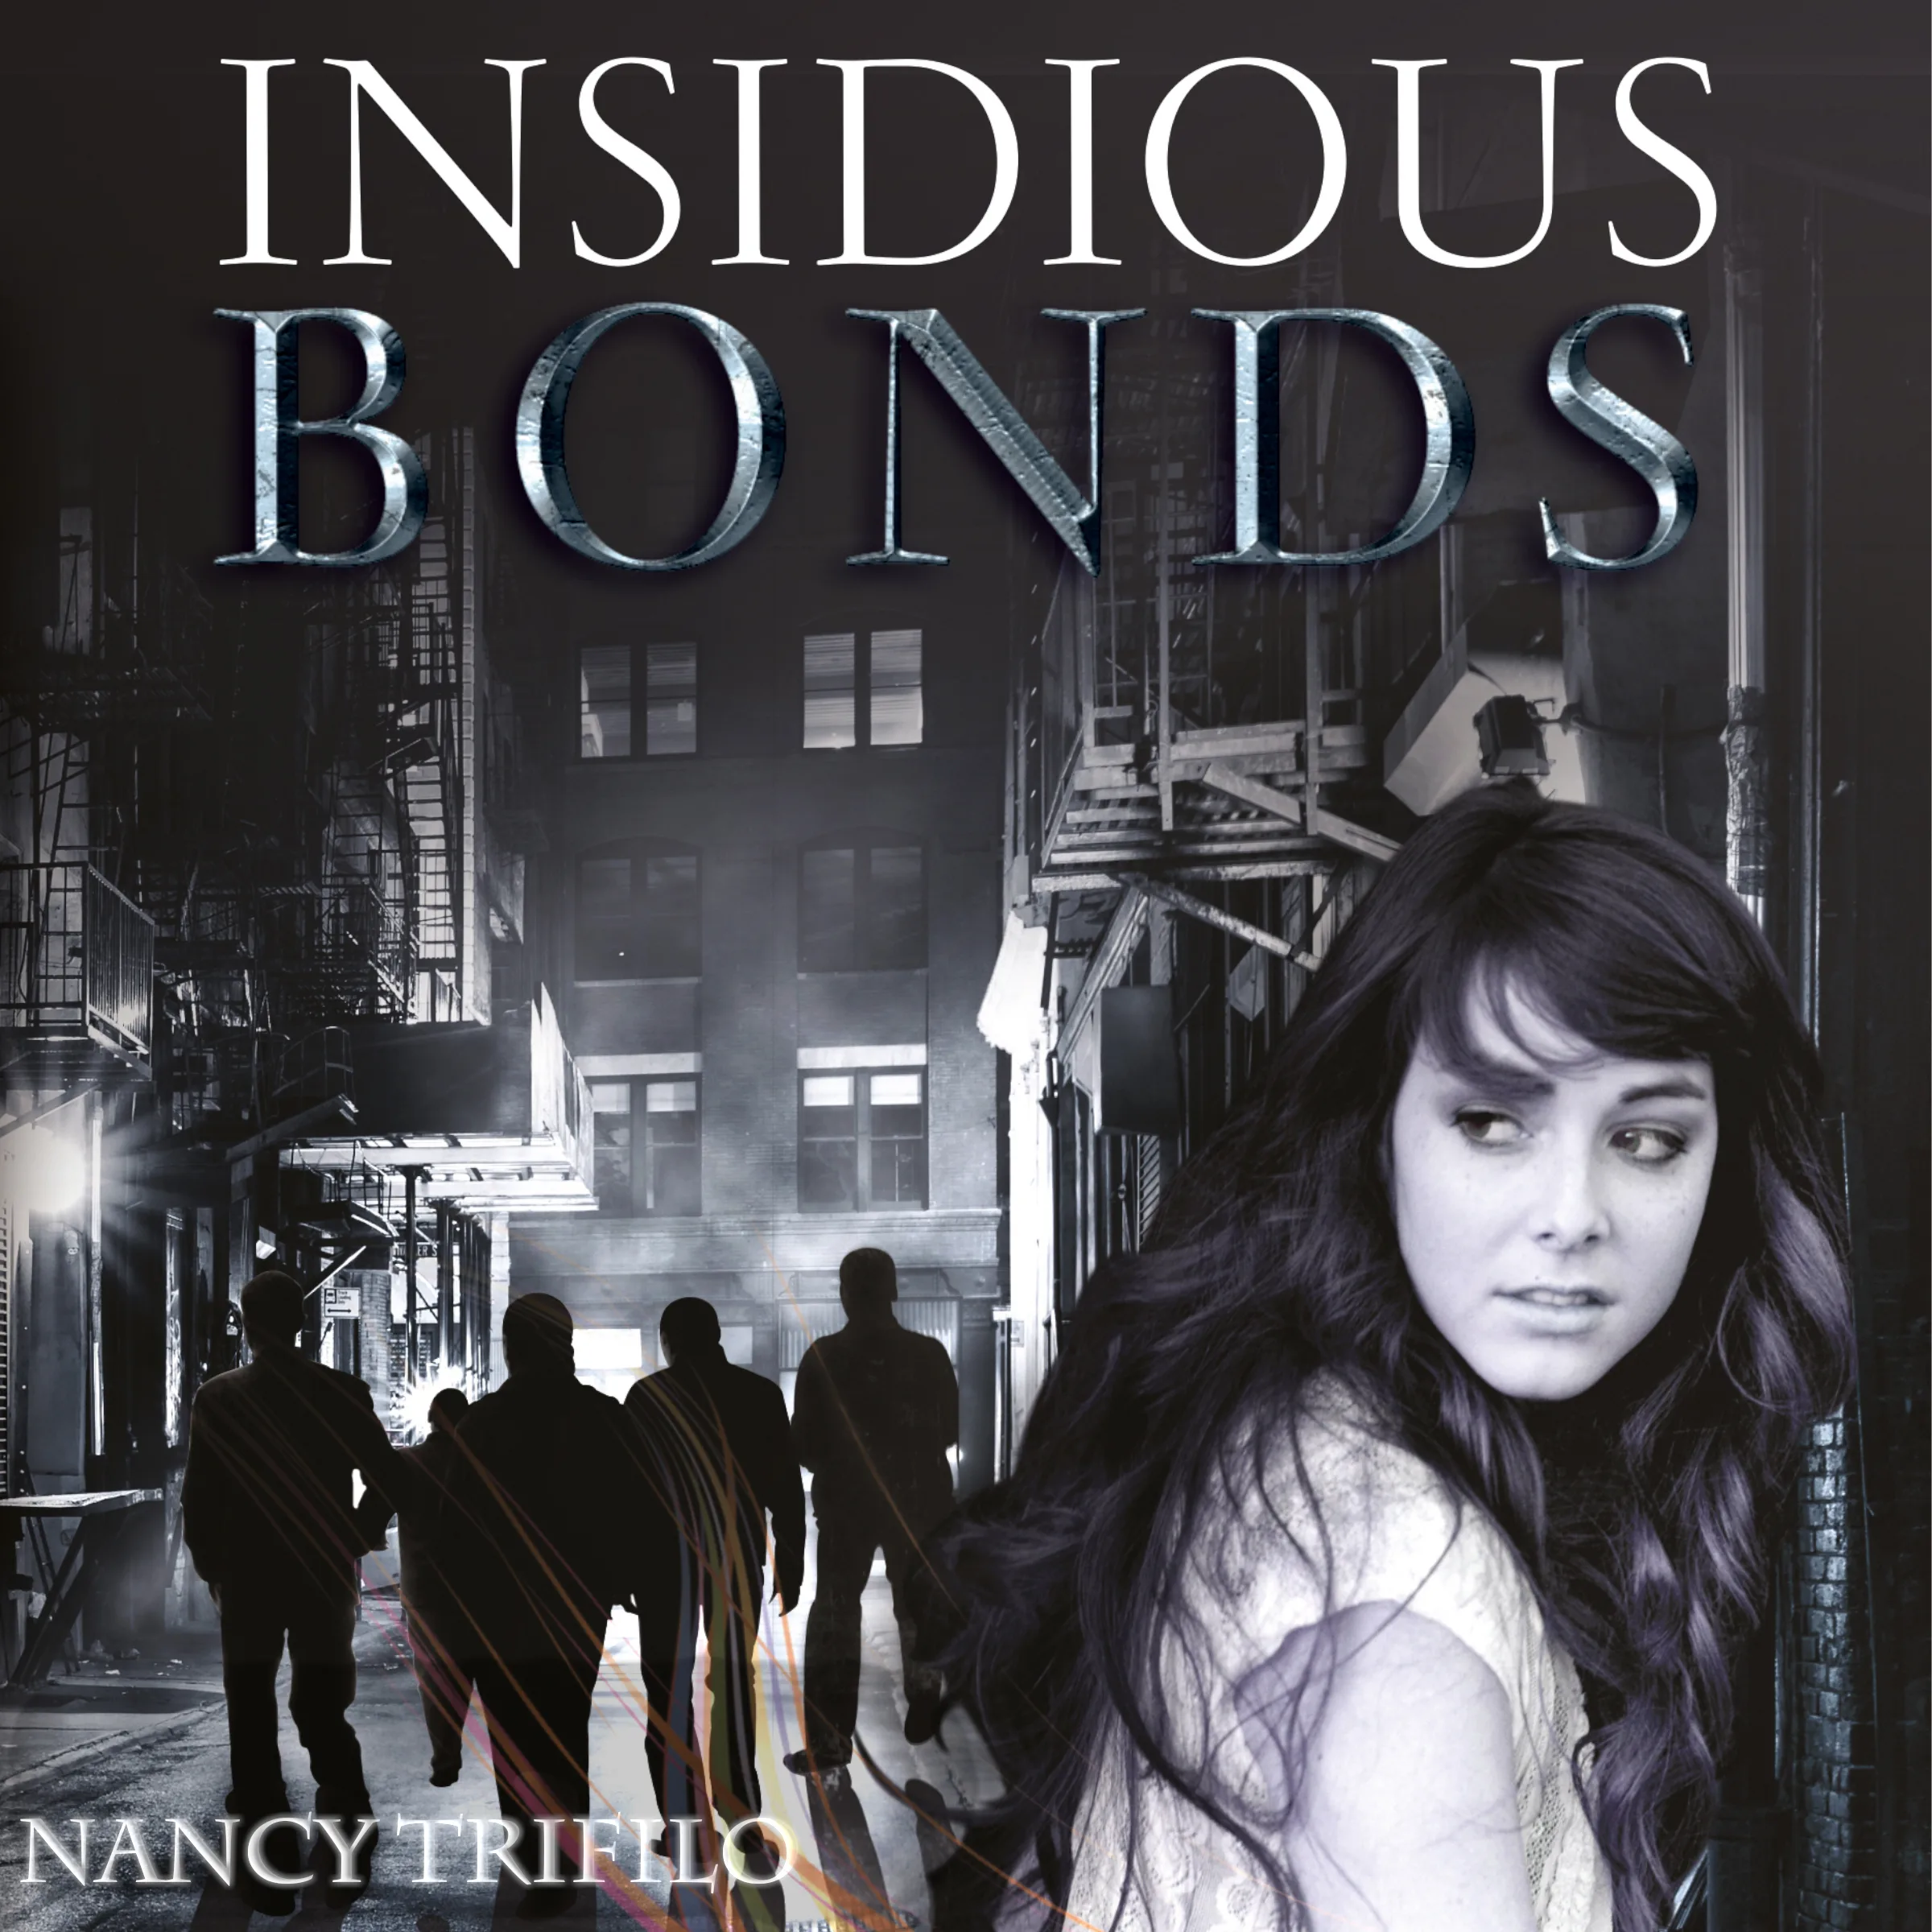 Insidious Bonds by Nancy Trifle